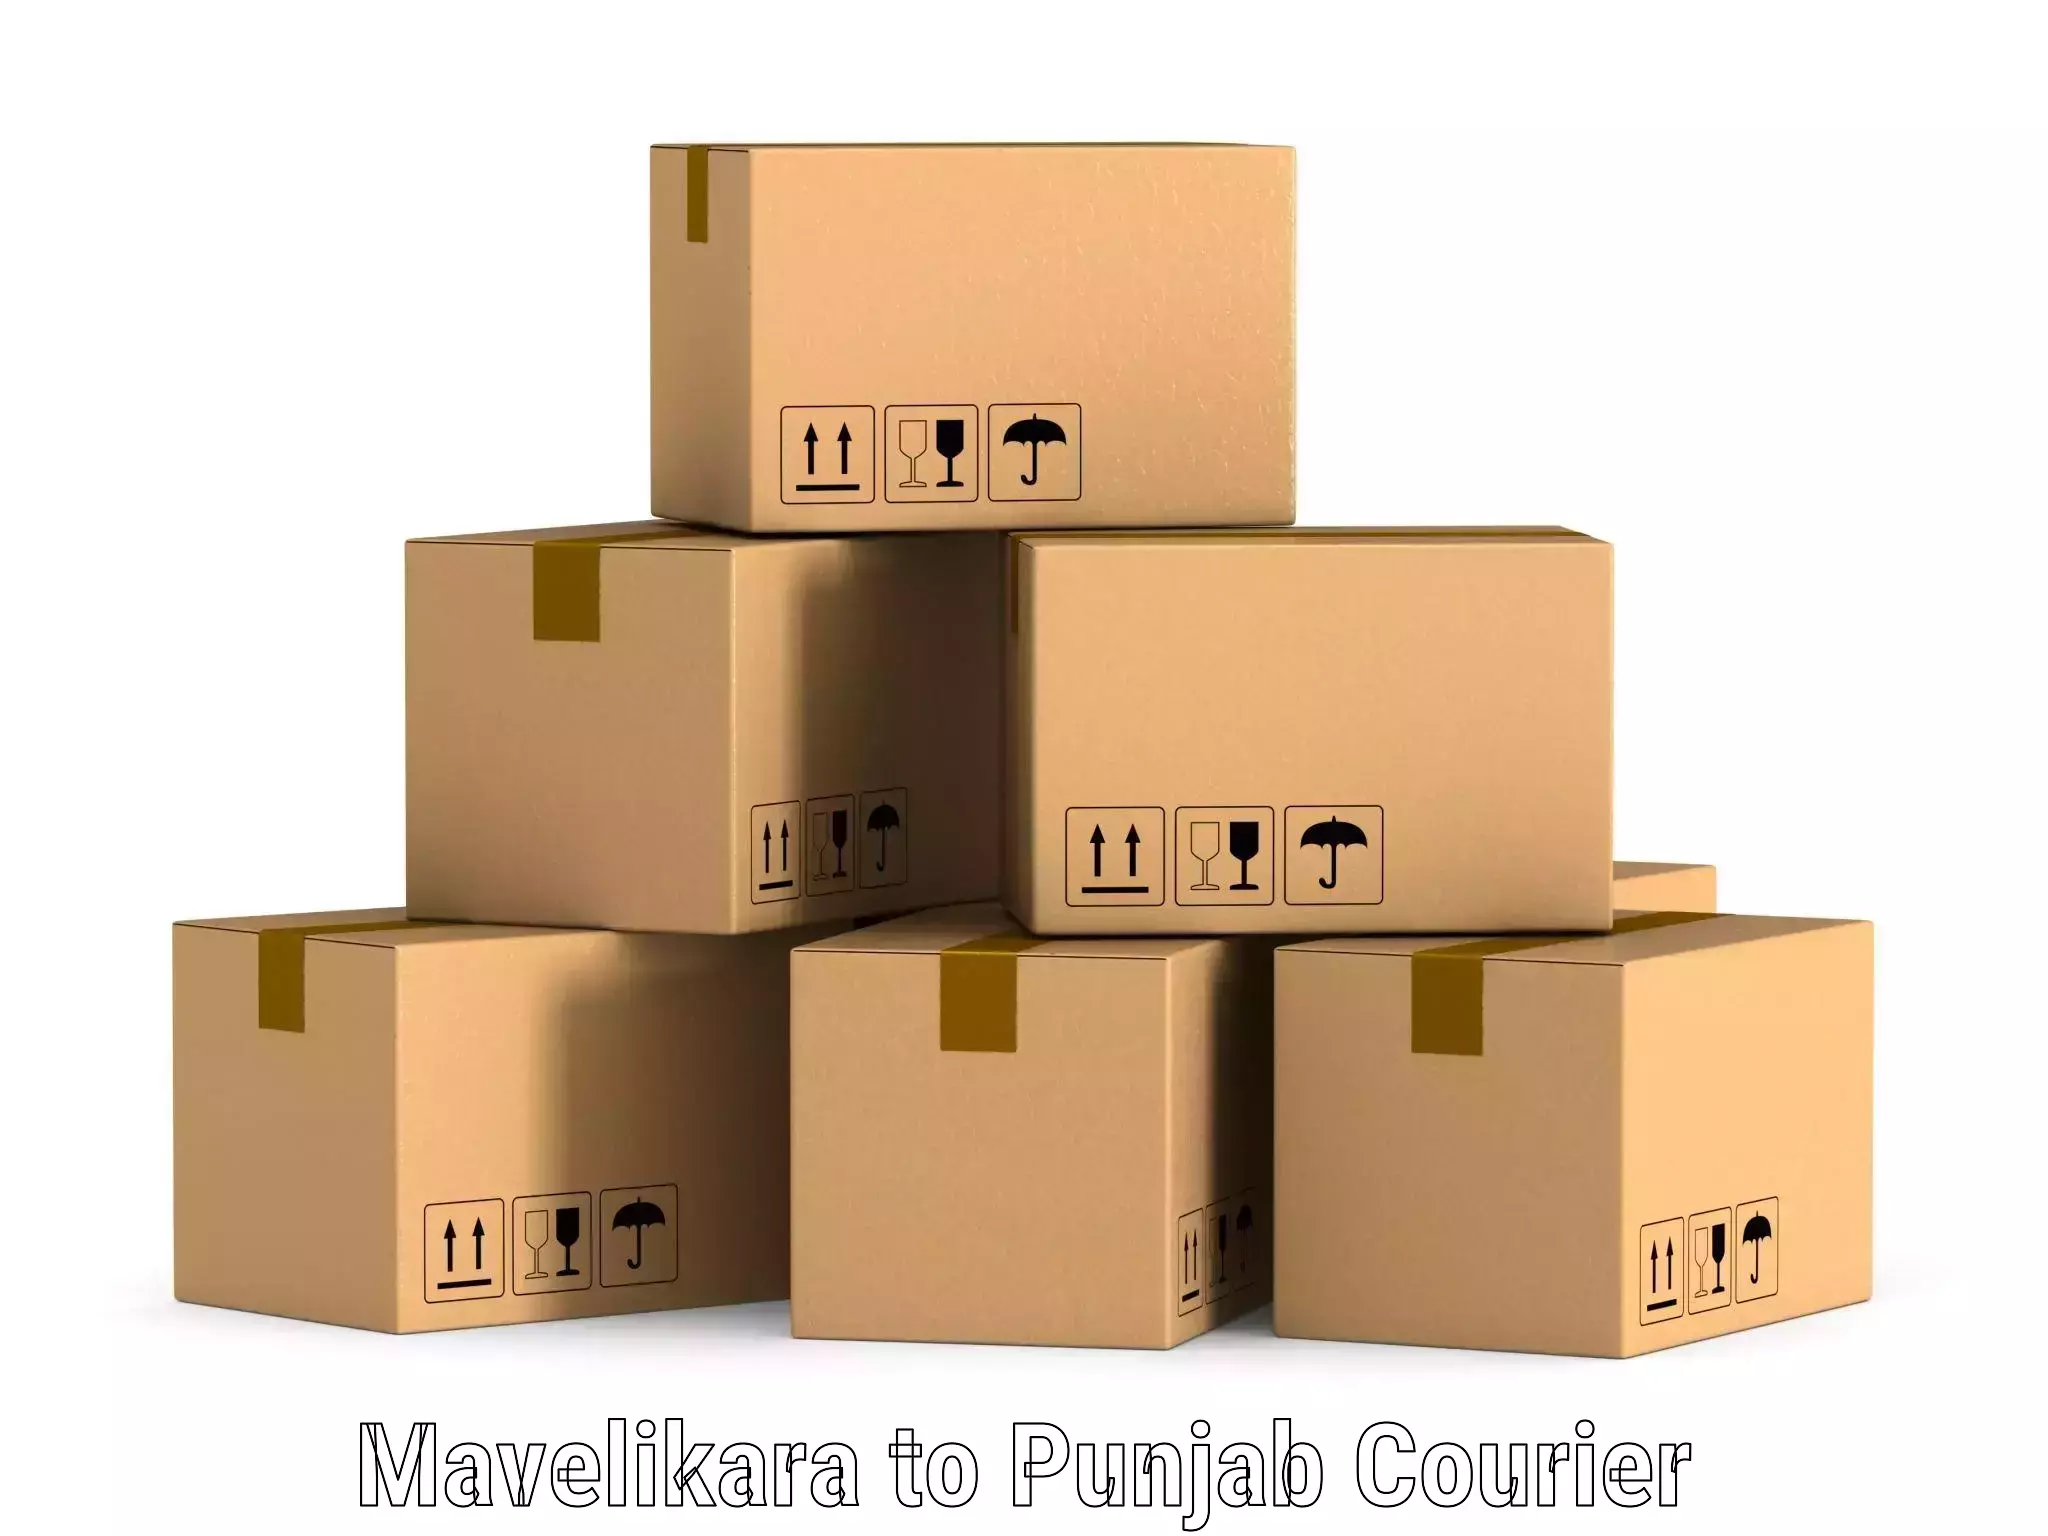 On-demand shipping options Mavelikara to Zirakpur